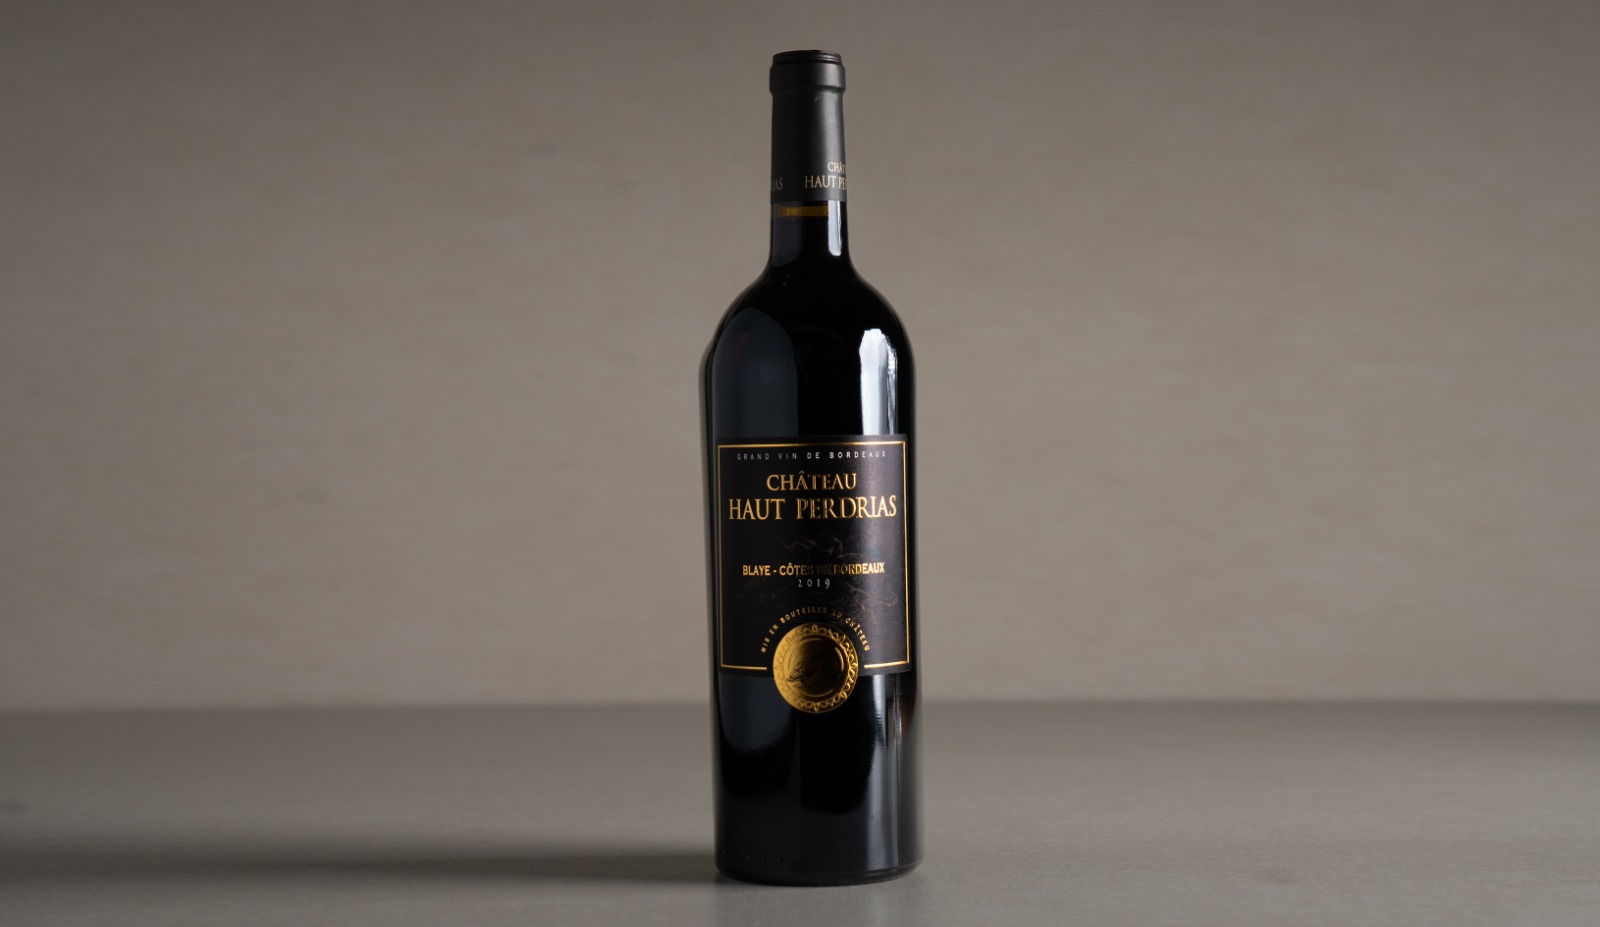 יין אדום יבש "שאטו האו פרדריאס" 2019